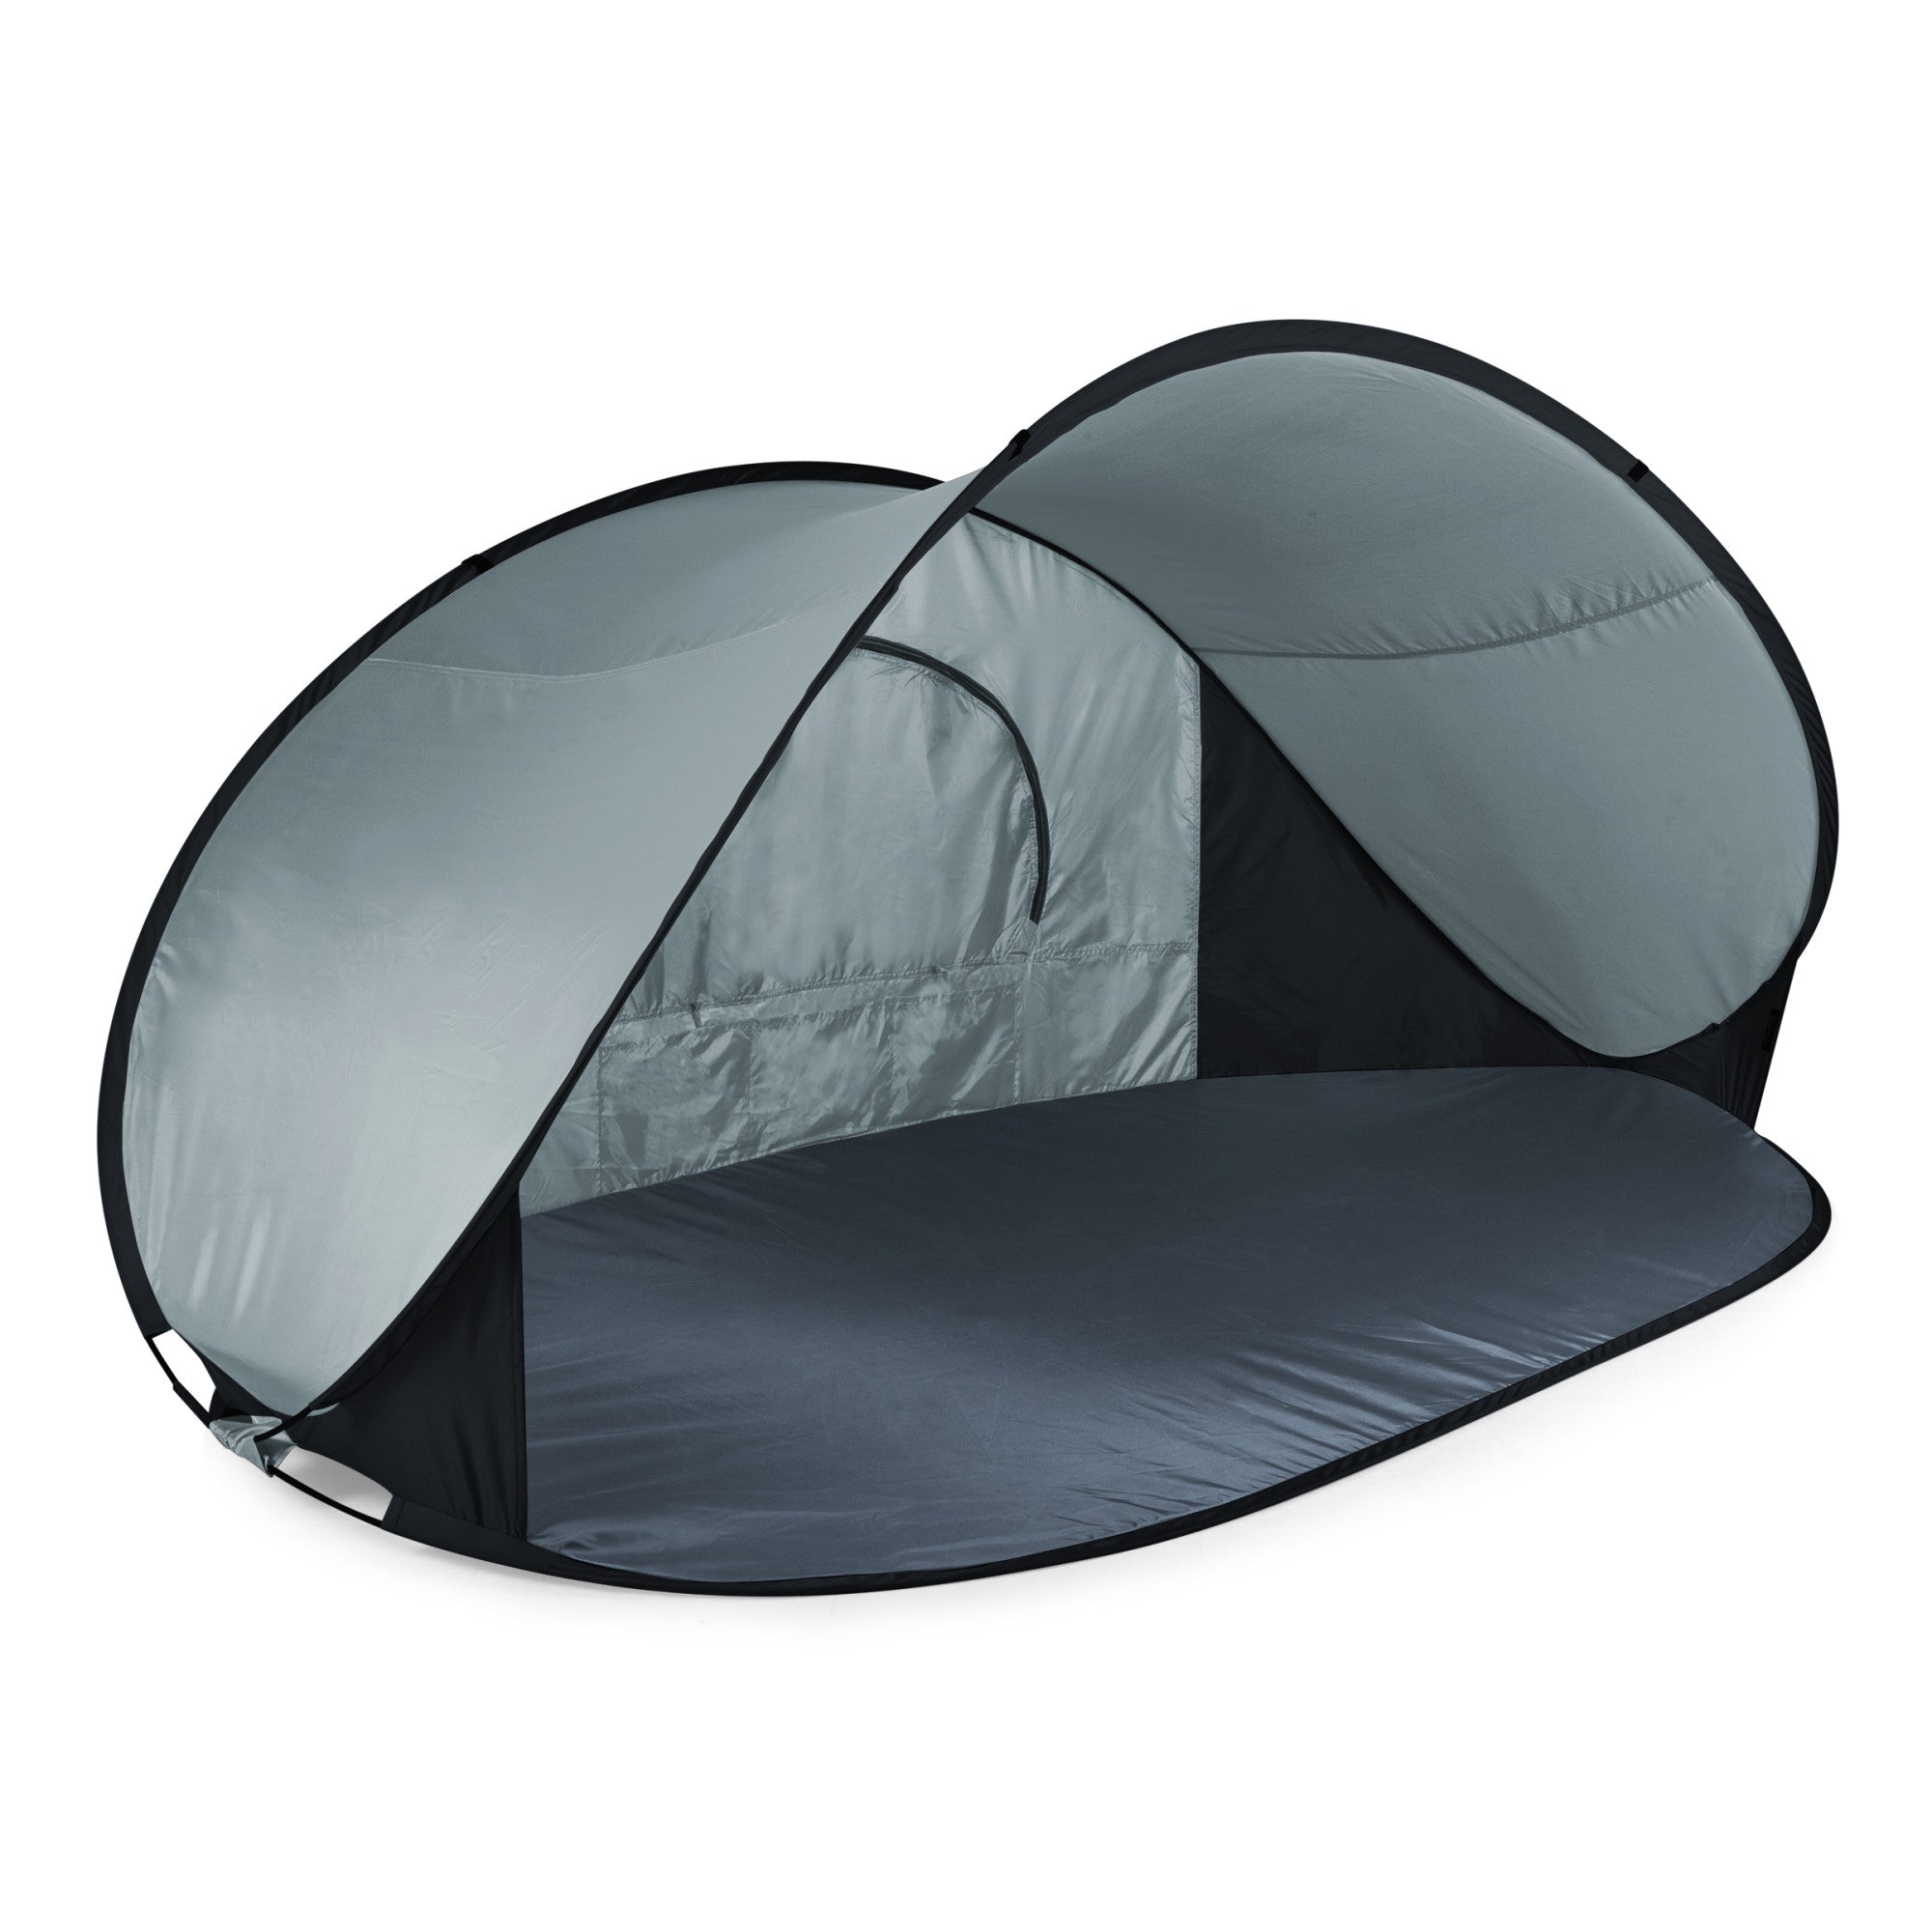 Manta Portable Beach Tent